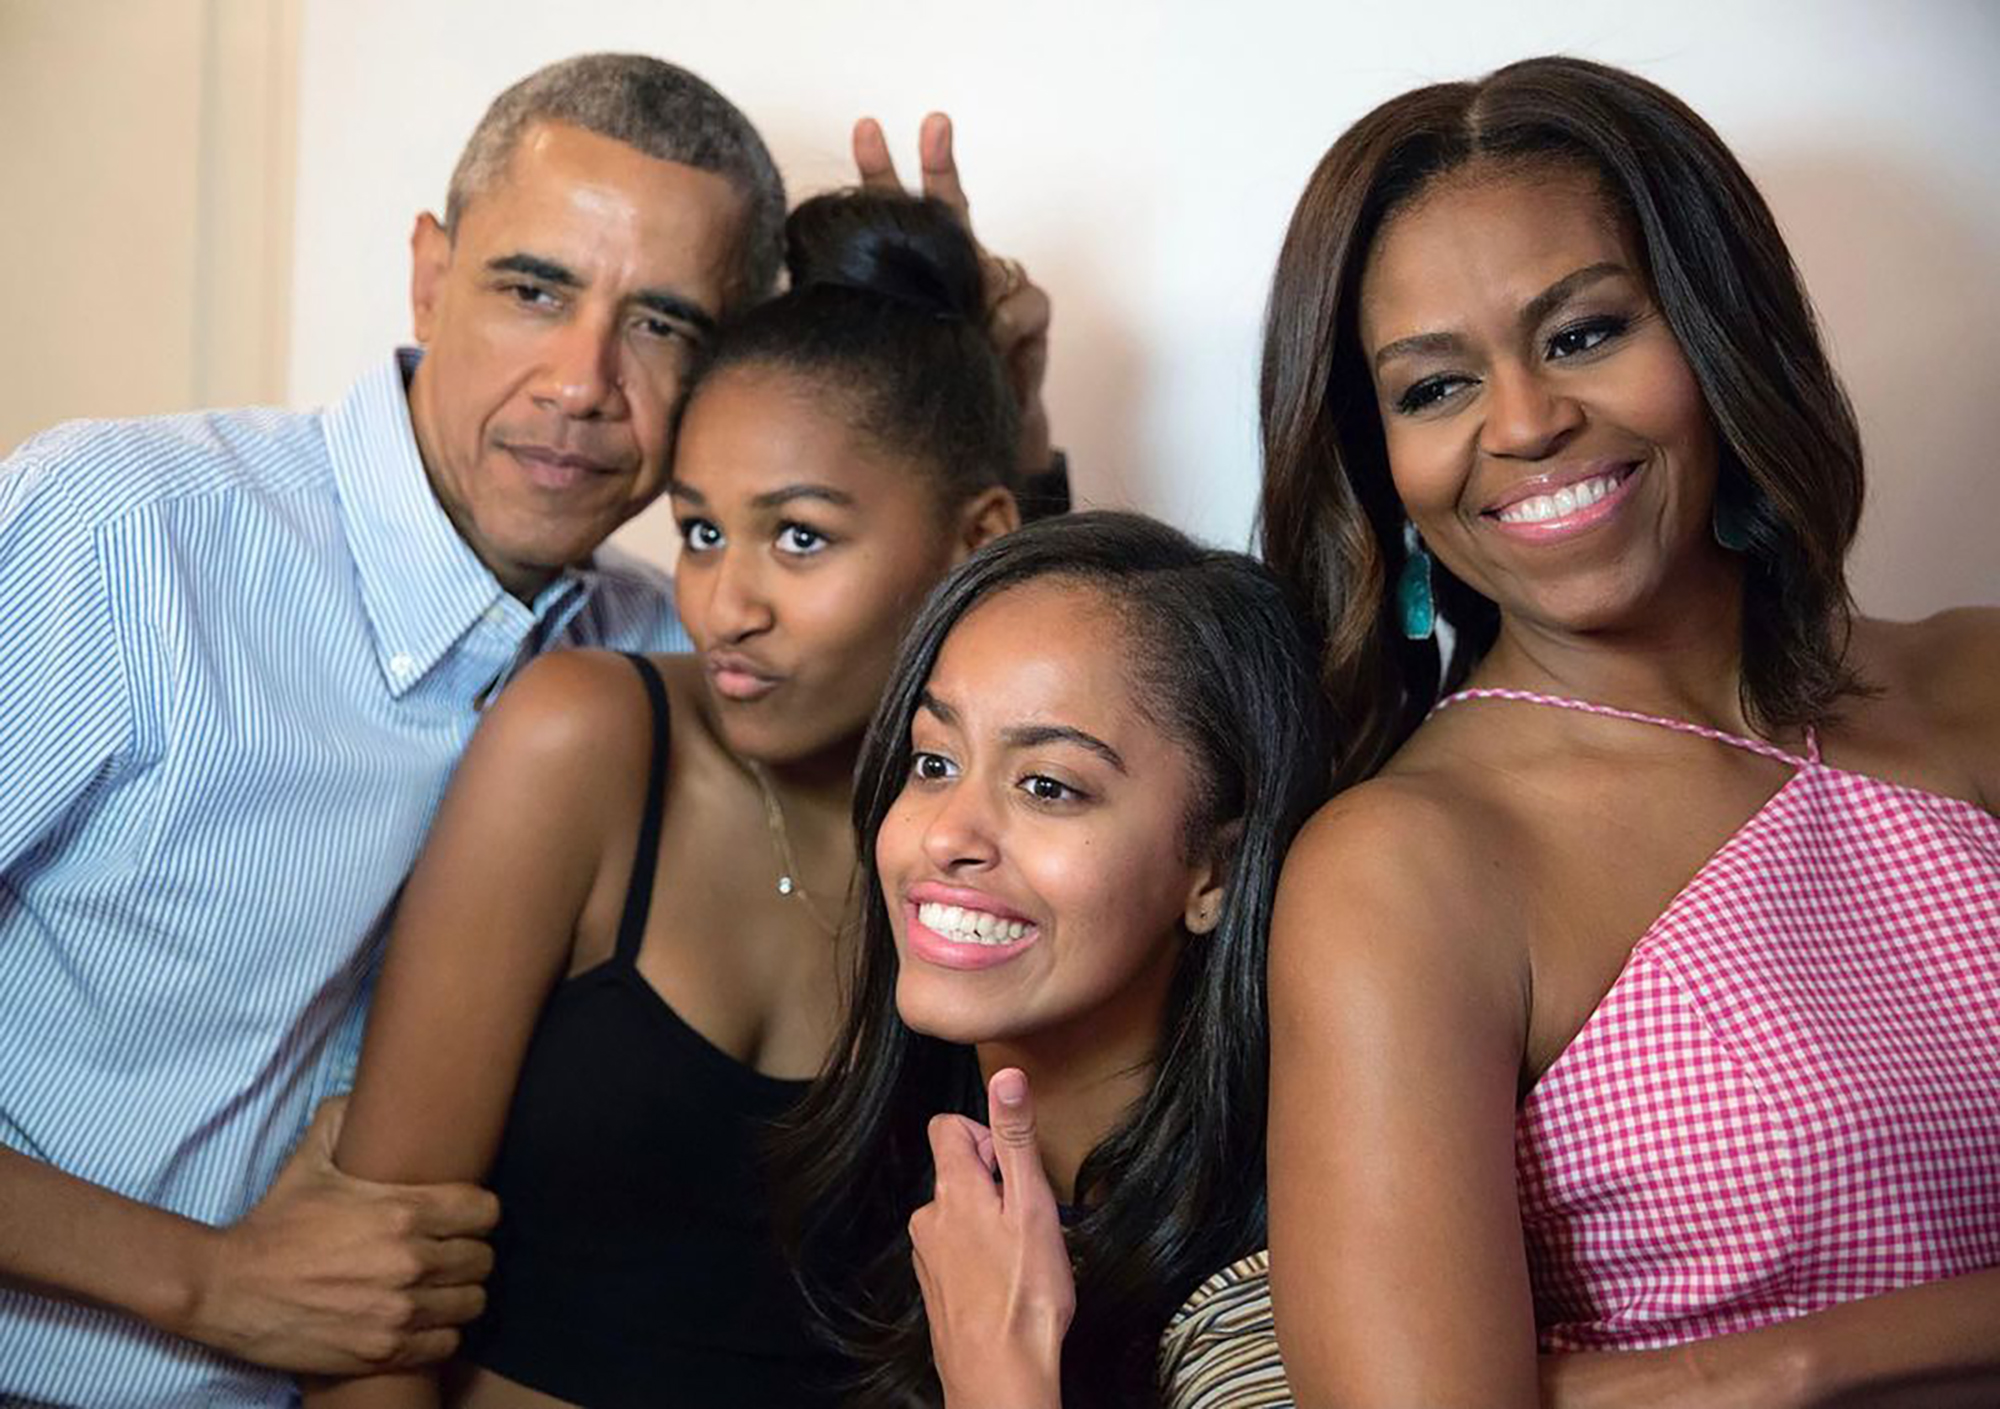 Michelle Obama reveals Malia, Sasha are sharing a home in LA